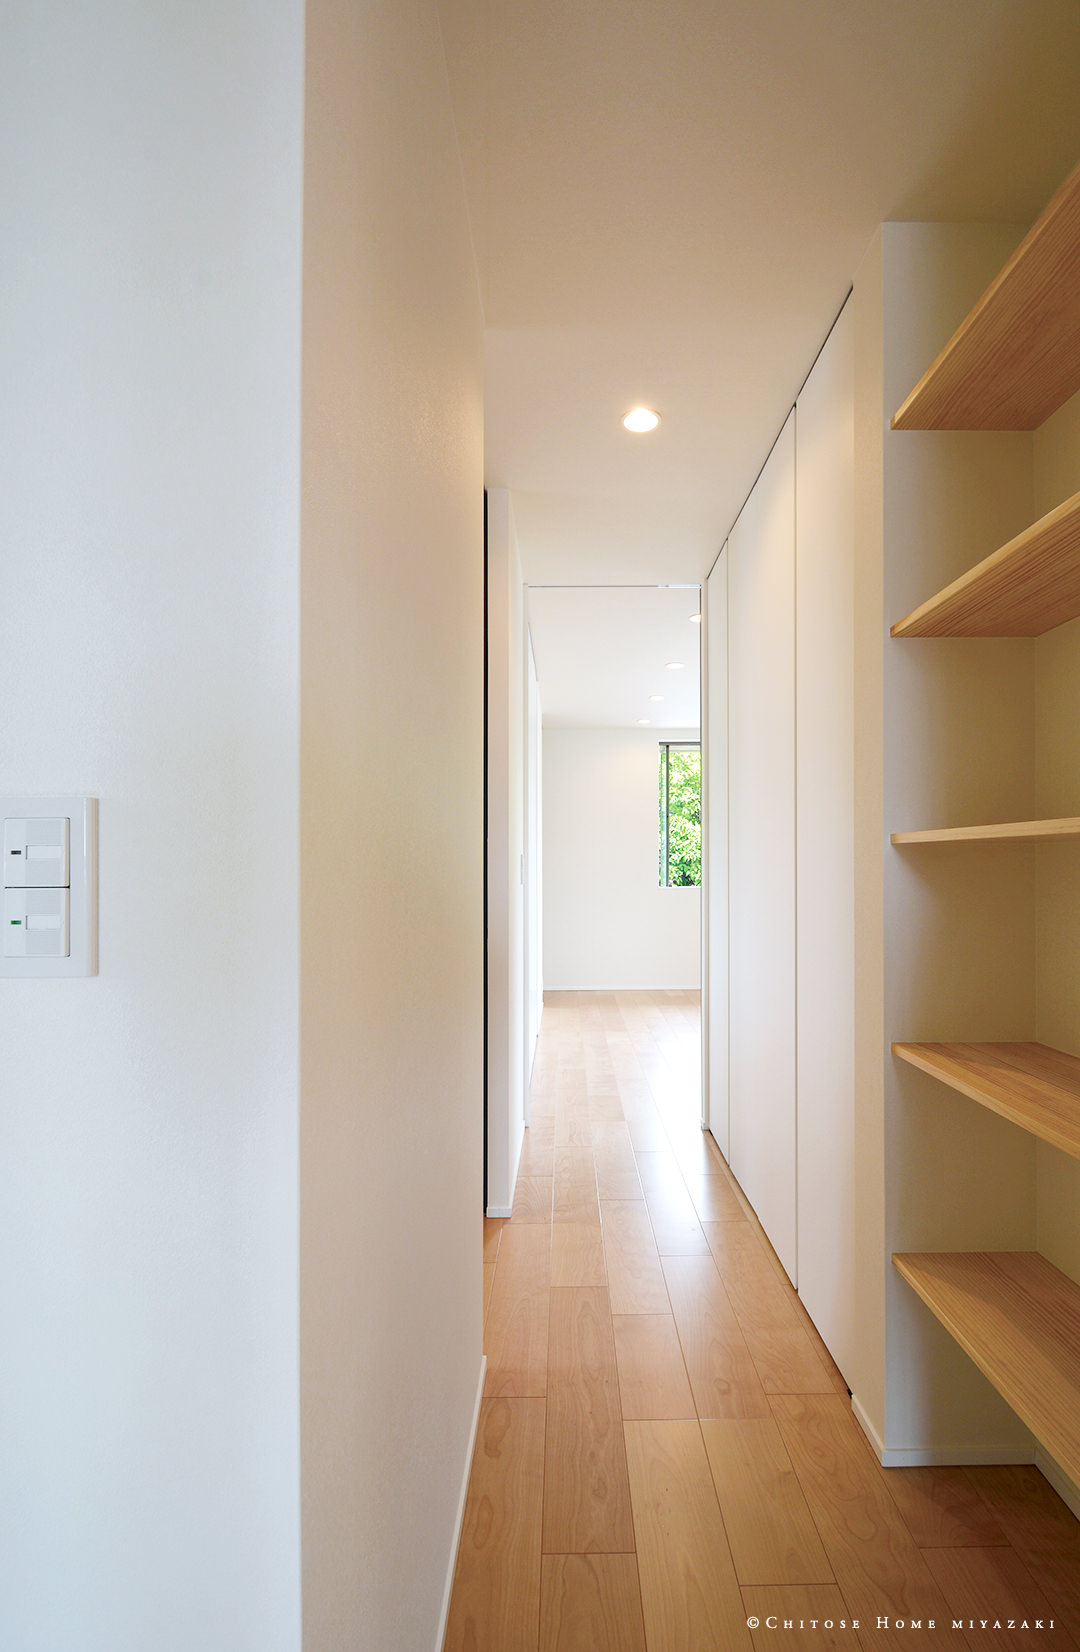 廊下の限られたスペースに収納と本棚を配置。各個室へのアクセスの用途に限らず、リビングから目立たない場所に機能的な収納を配置。使い勝手の実用性を考慮した設計。